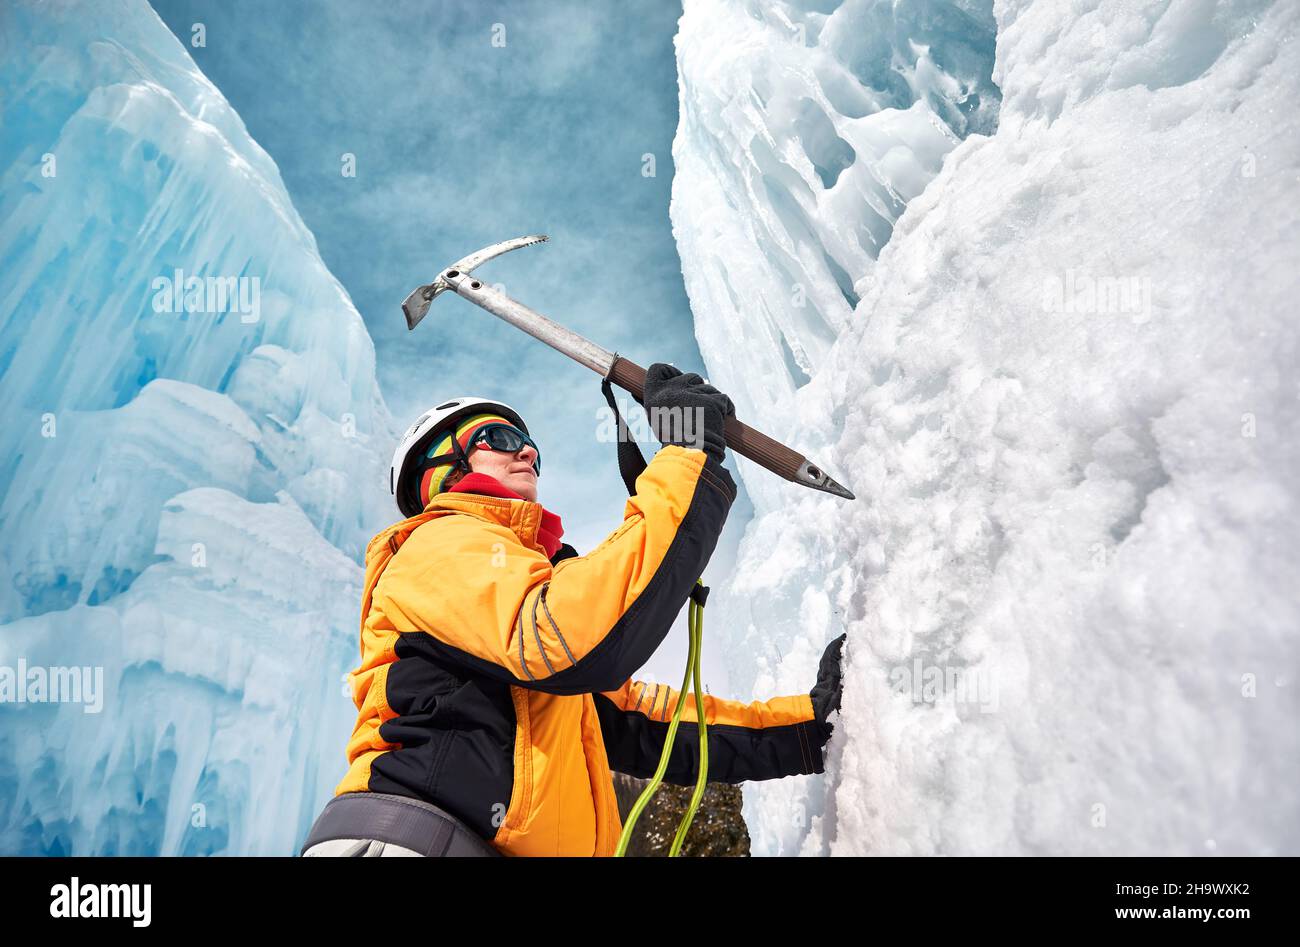 La femme escalade une chute d'eau gelée avec une hache de glace dans une veste orange dans les montagnes.Sport alpinisme et alpinisme concept. Banque D'Images